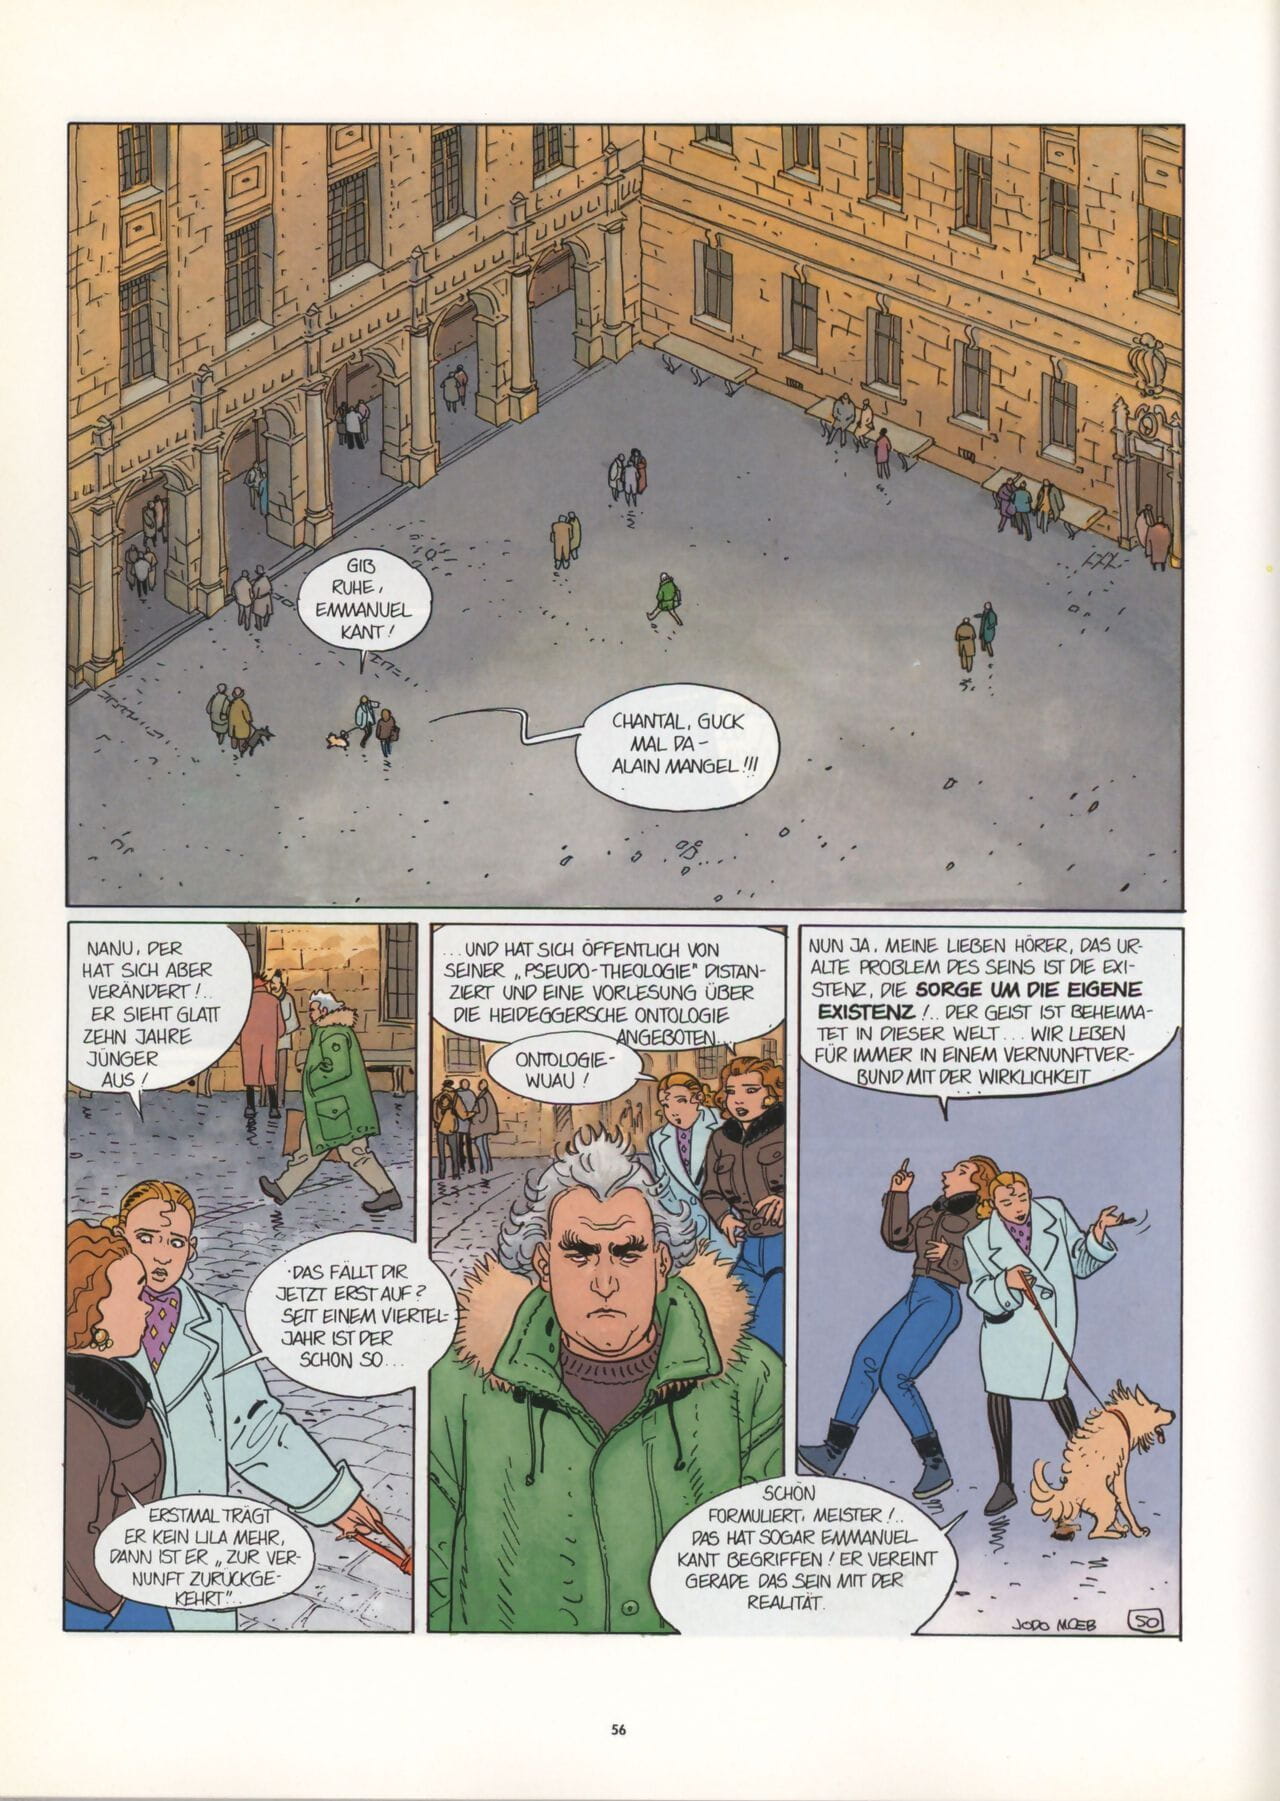 Lust und Glaube #1 : Die Irre von Sacré-Coeur - part 3 page 1